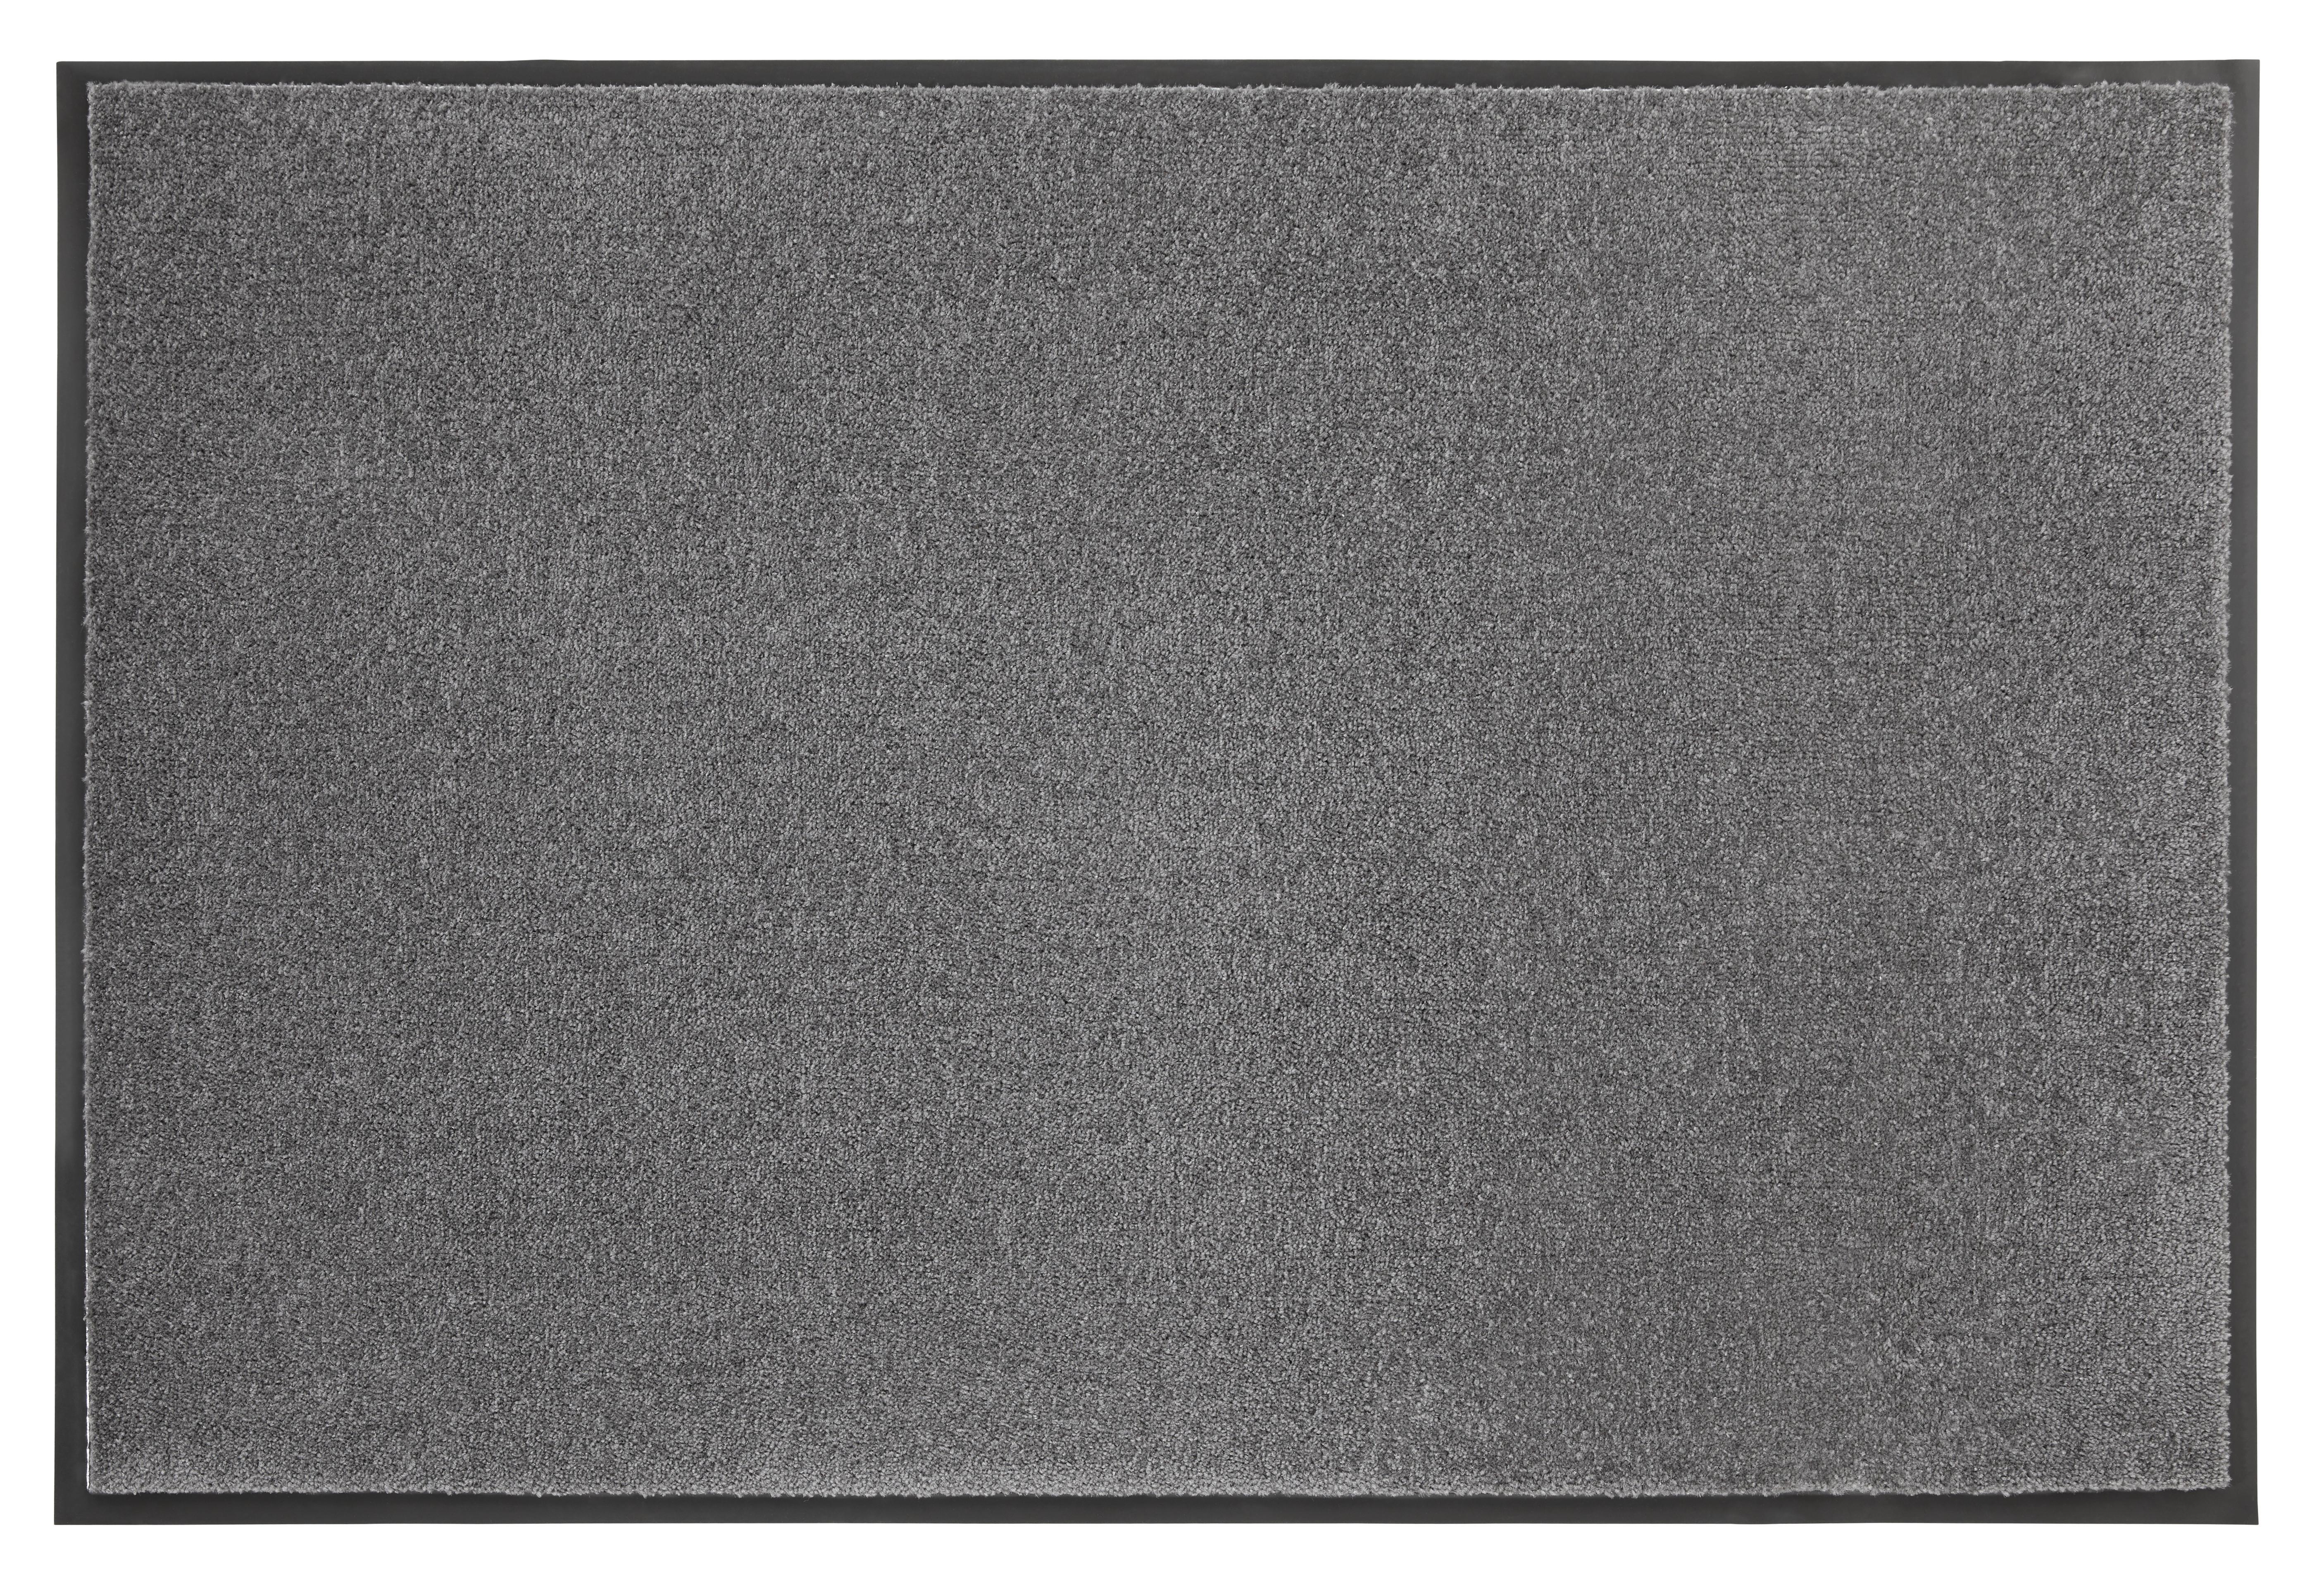 Fußmatte Eton in Anthrazit ca.80x120cm - Anthrazit, KONVENTIONELL, Textil (80/120cm) - Modern Living